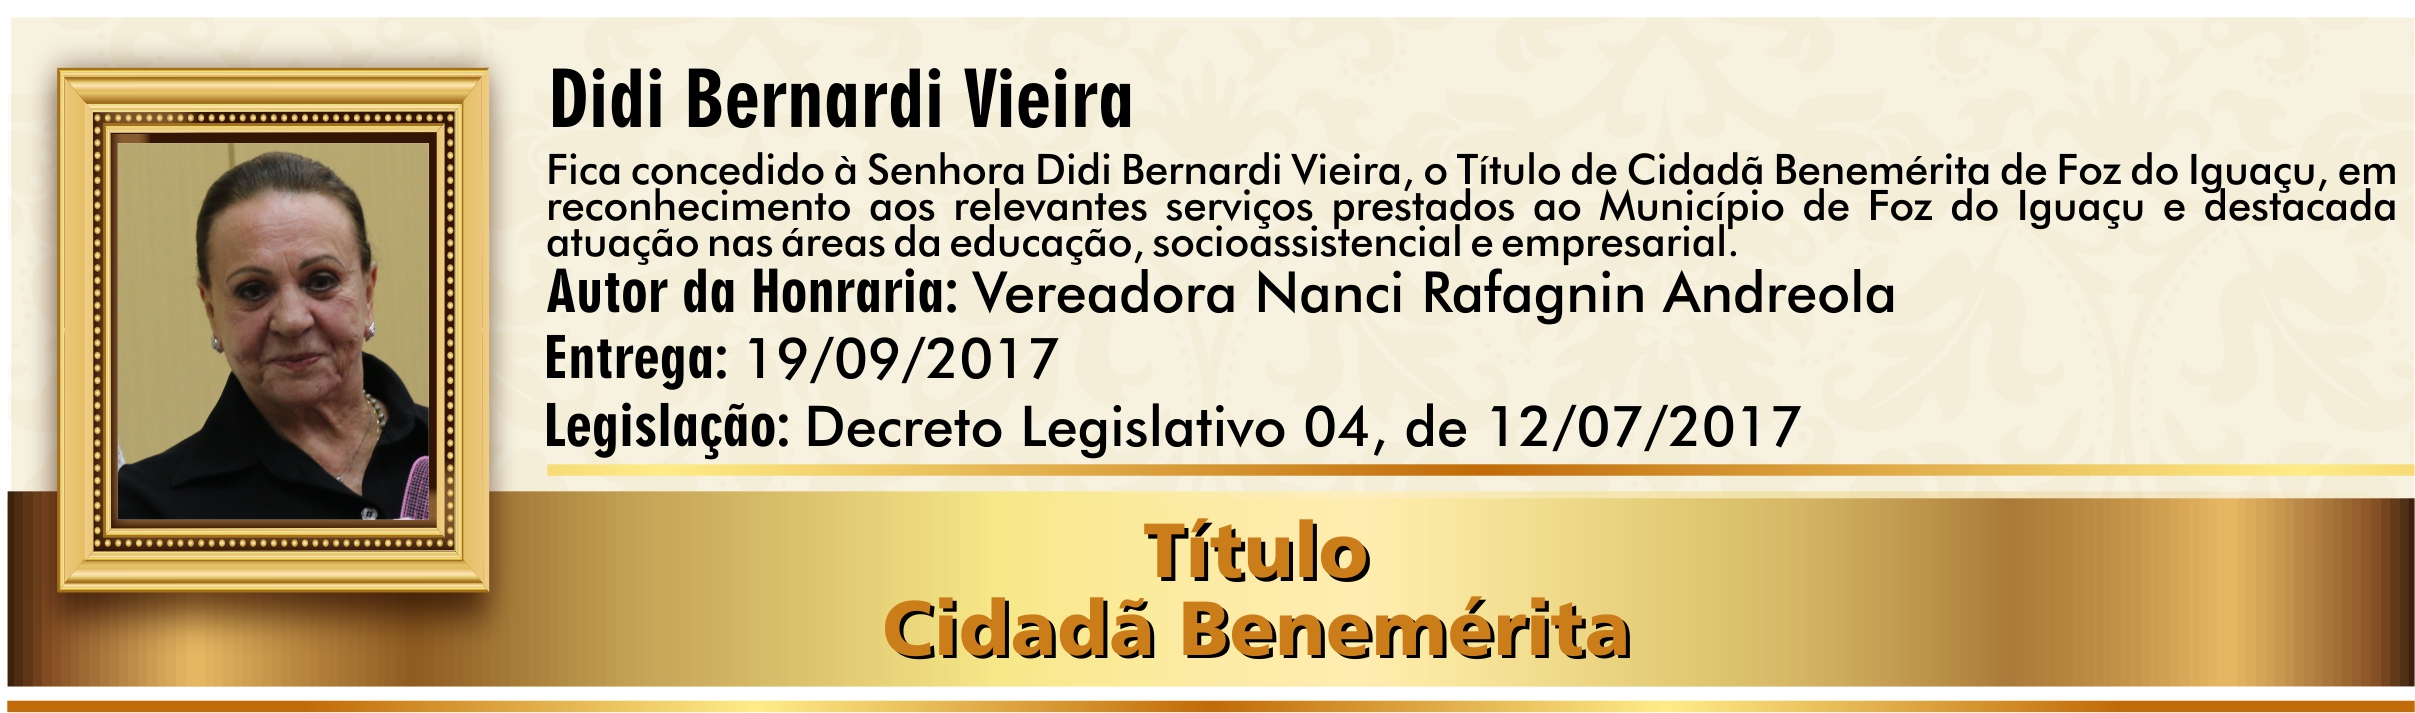 Didi Bernardi Vieira